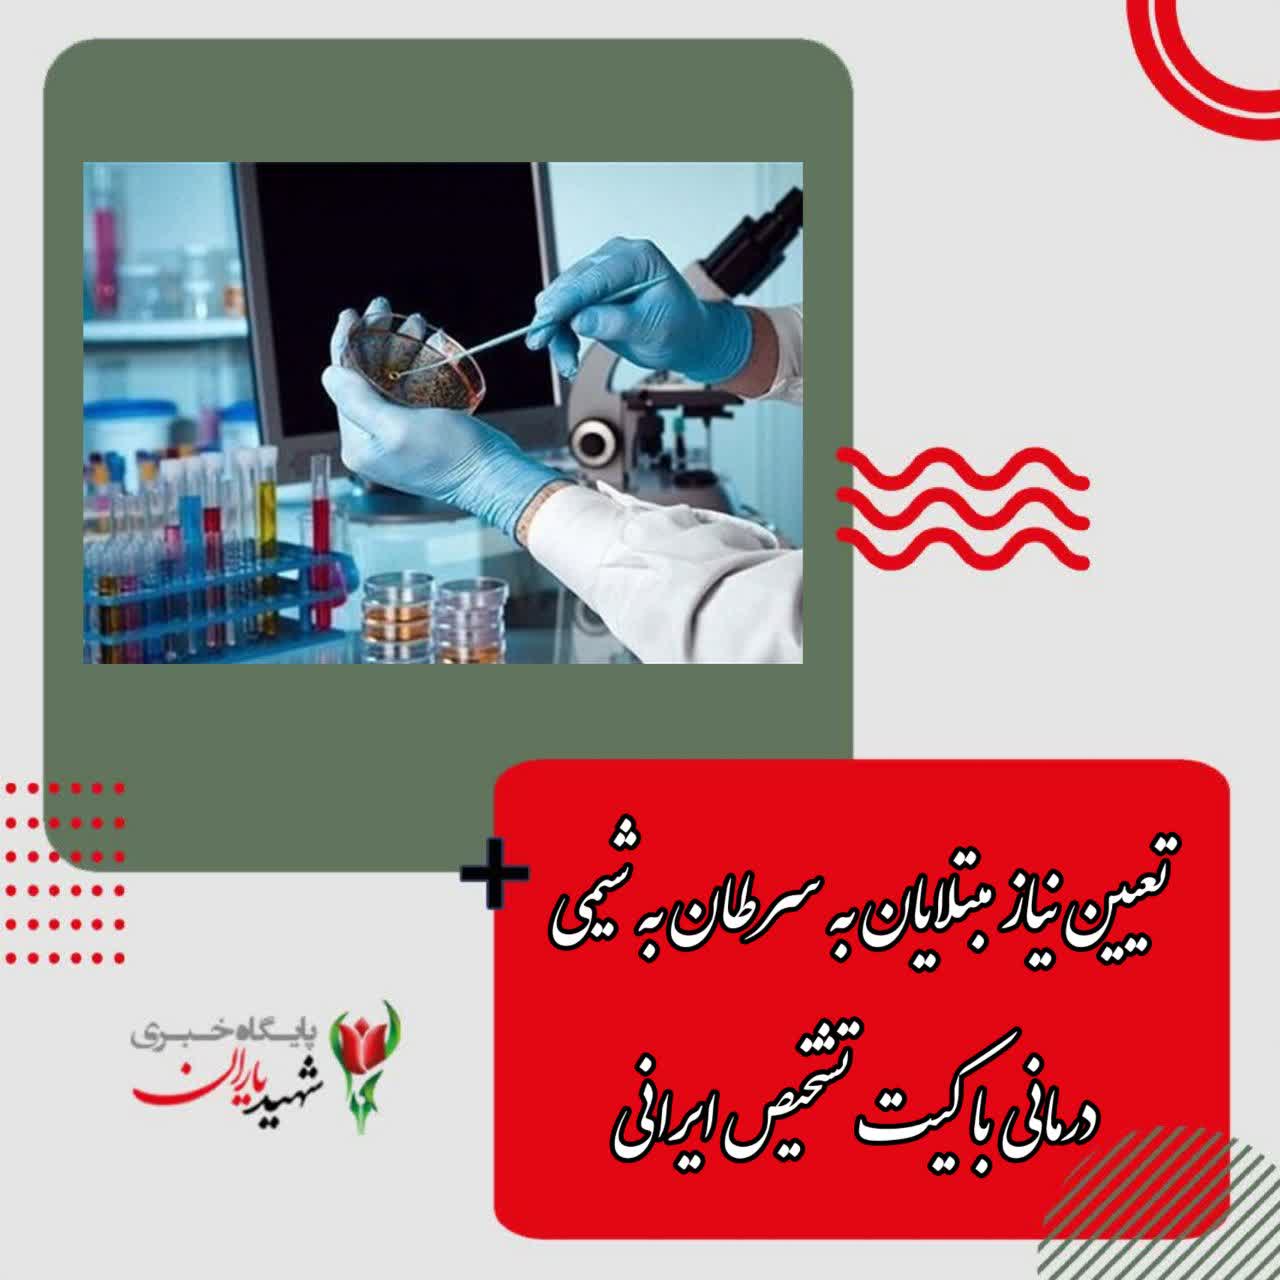 تعیین نیاز مبتلایان به سرطان به شیمی درمانی با کیت تشخیص ایرانی